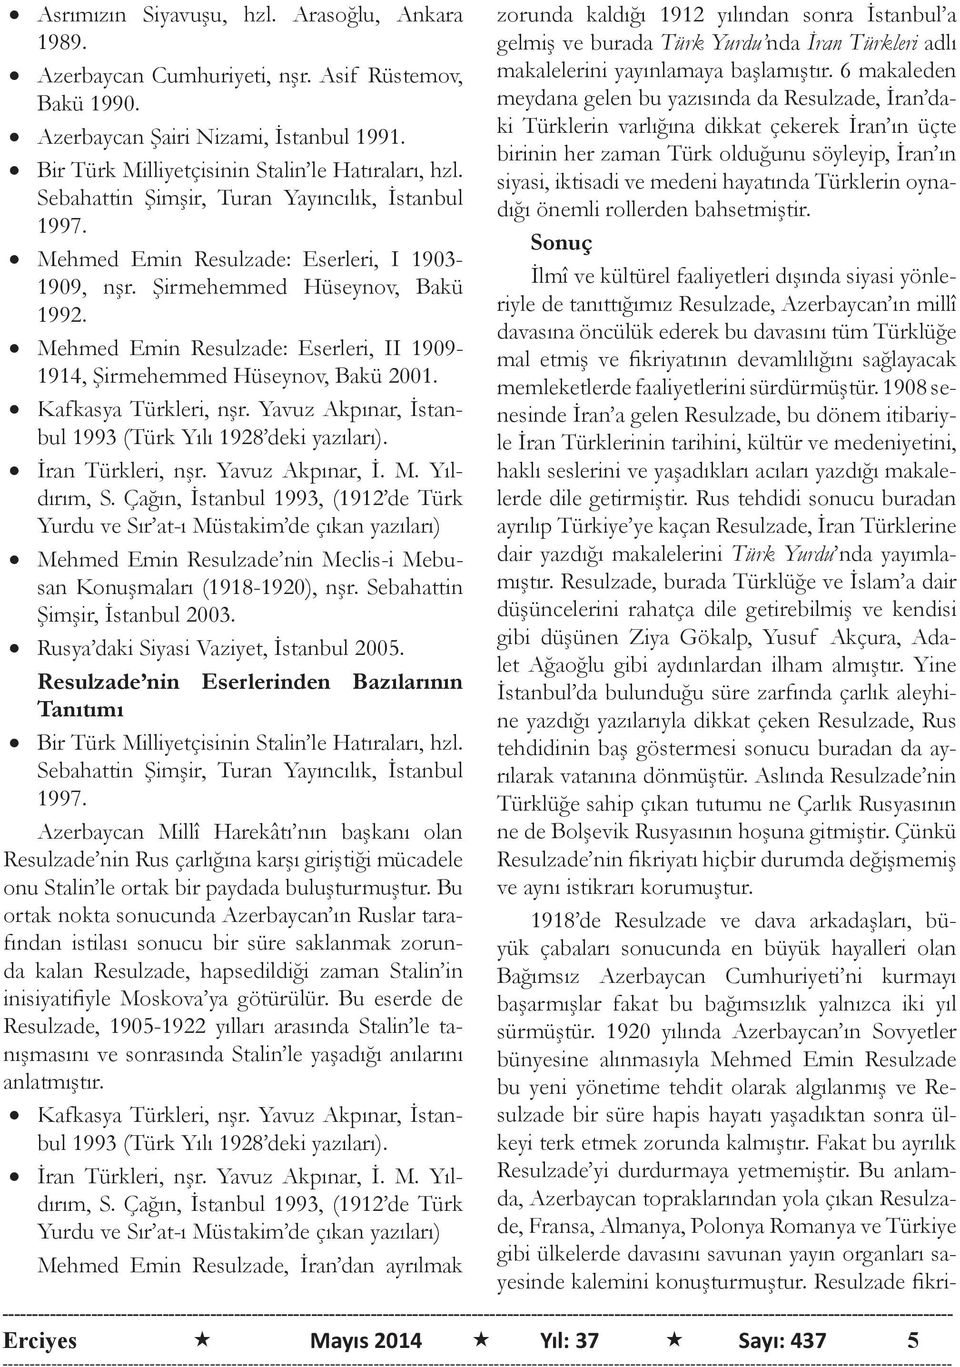 Mehmed Emin Resulzade: Eserleri, II 1909-1914, Şirmehemmed Hüseynov, Bakü 2001. Kafkasya Türkleri, nşr. Yavuz Akpınar, İstanbul 1993 (Türk Yılı 1928 deki yazıları). İran Türkleri, nşr.